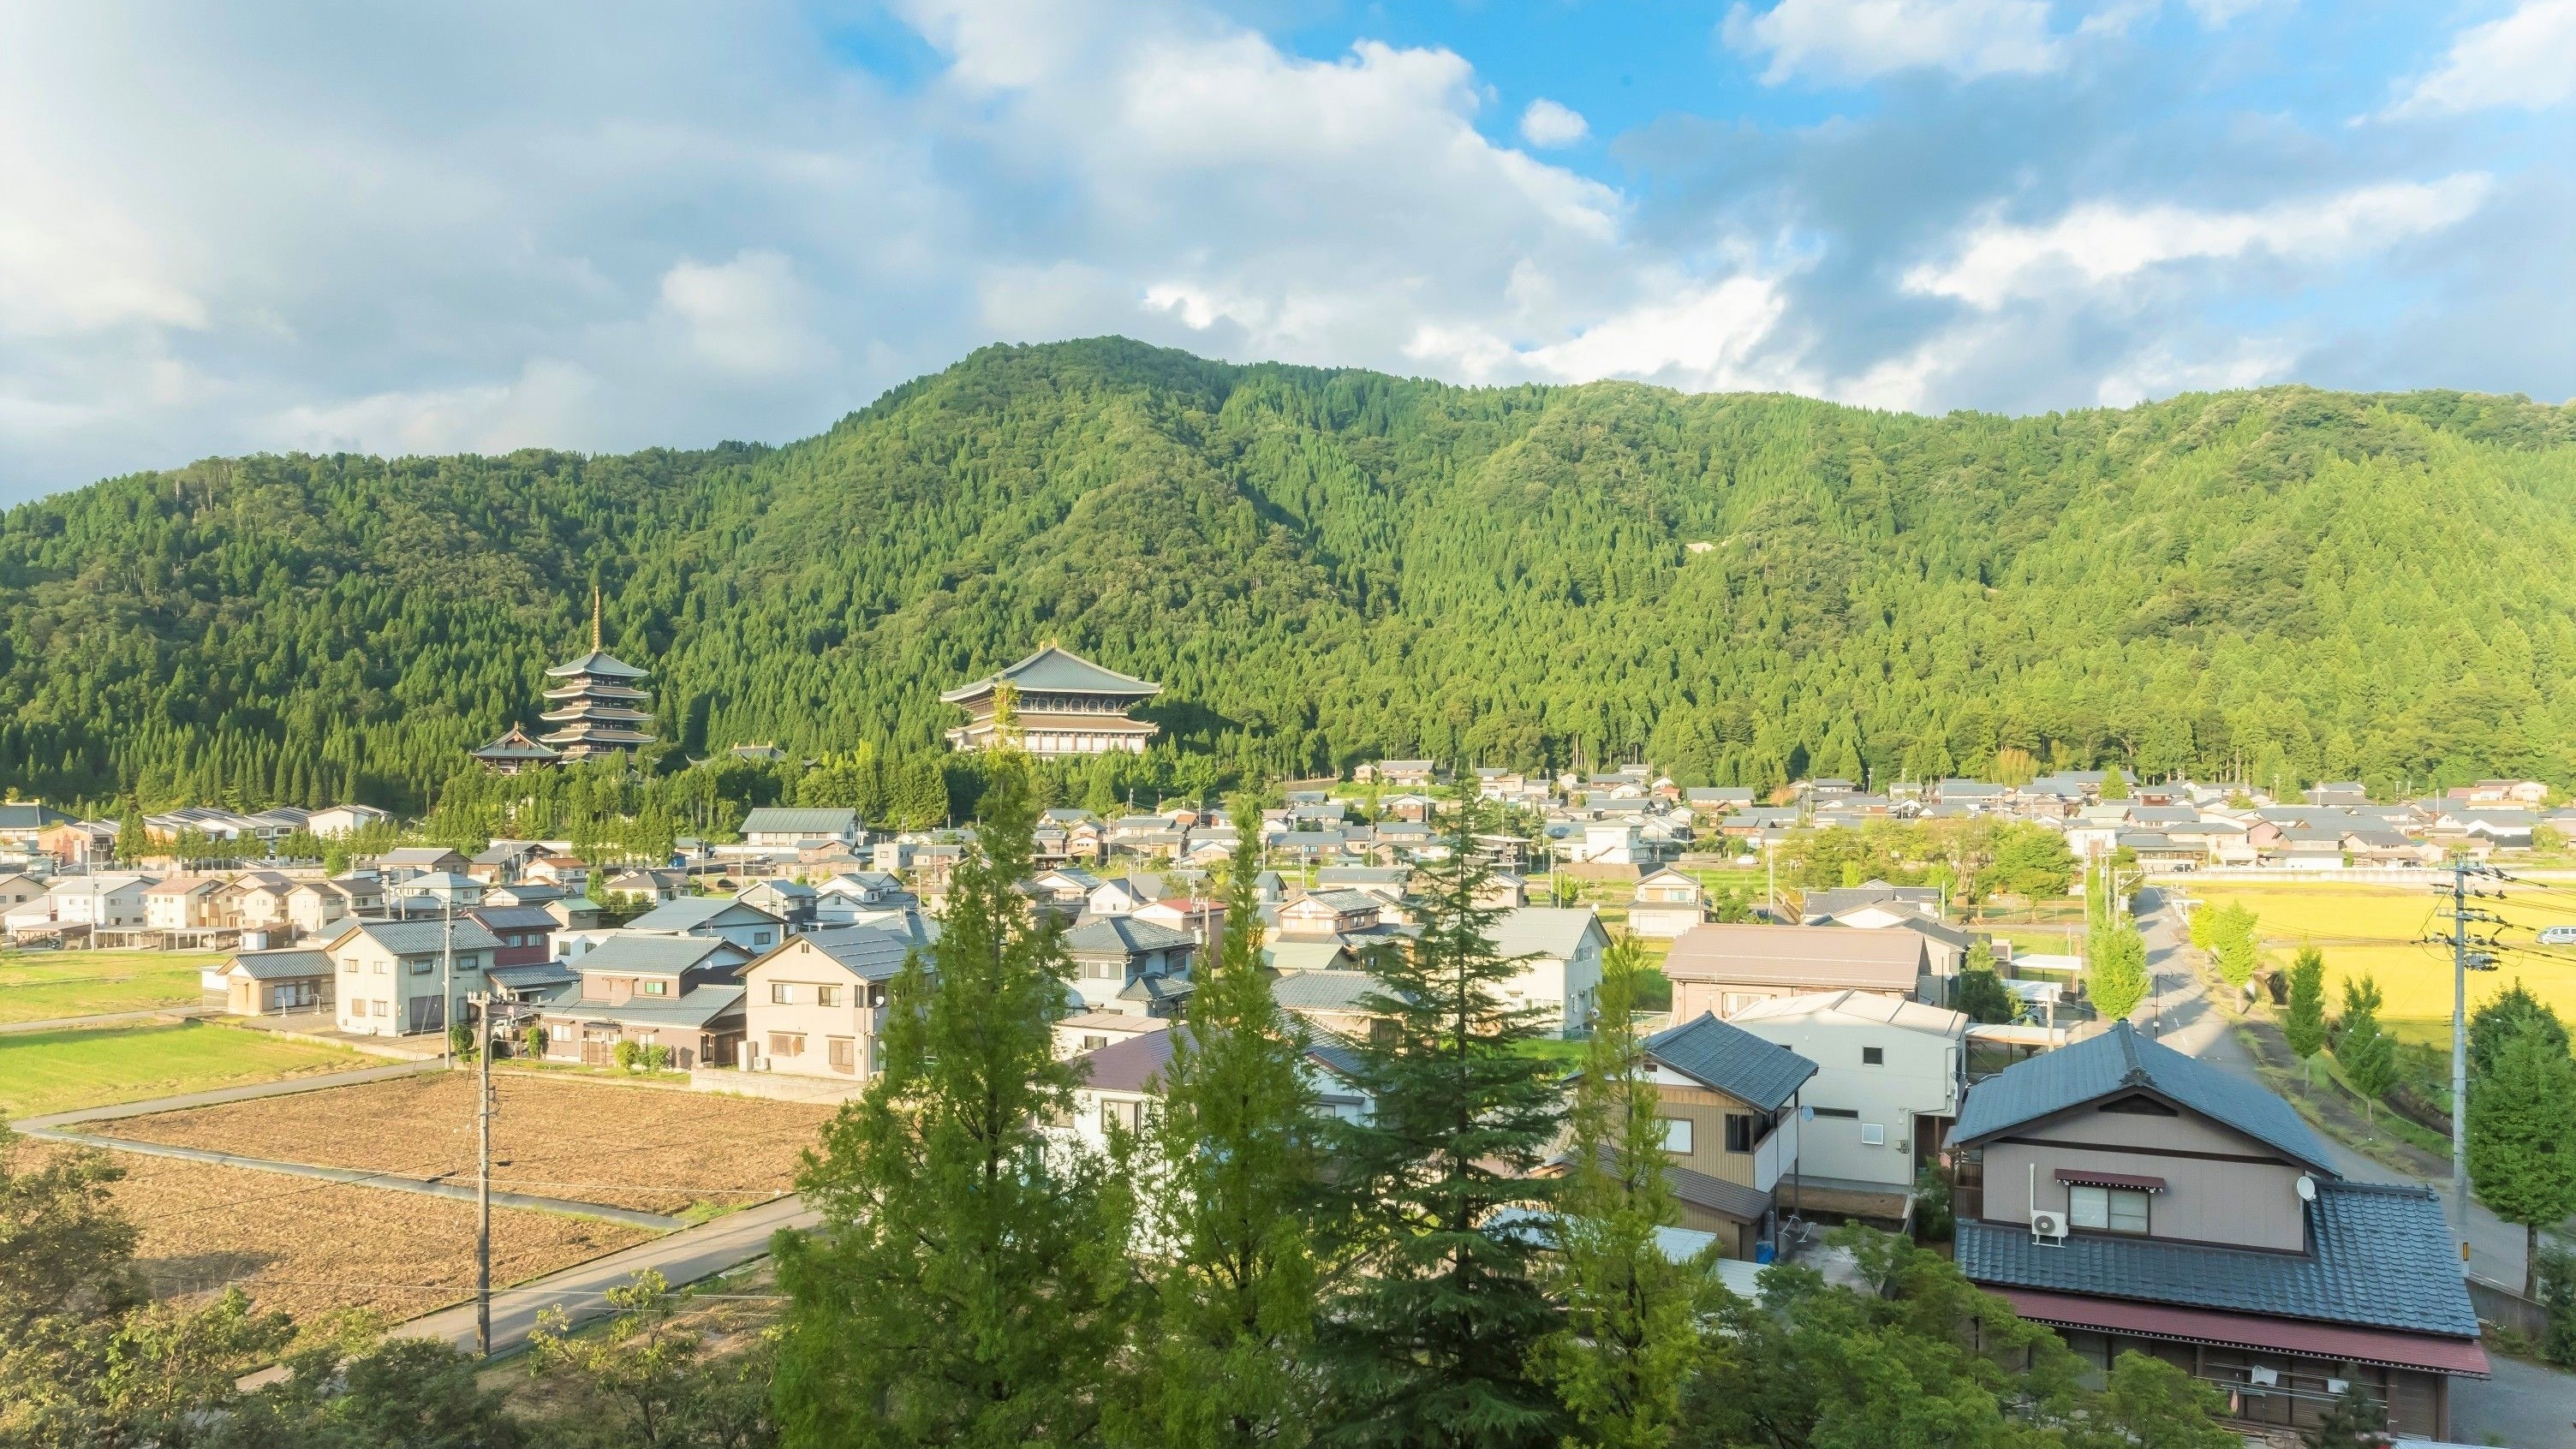 福井県 勝山市周辺のおすすめホテル 恐竜博物館や白峰温泉 スキーが人気 Skyticket 観光ガイド